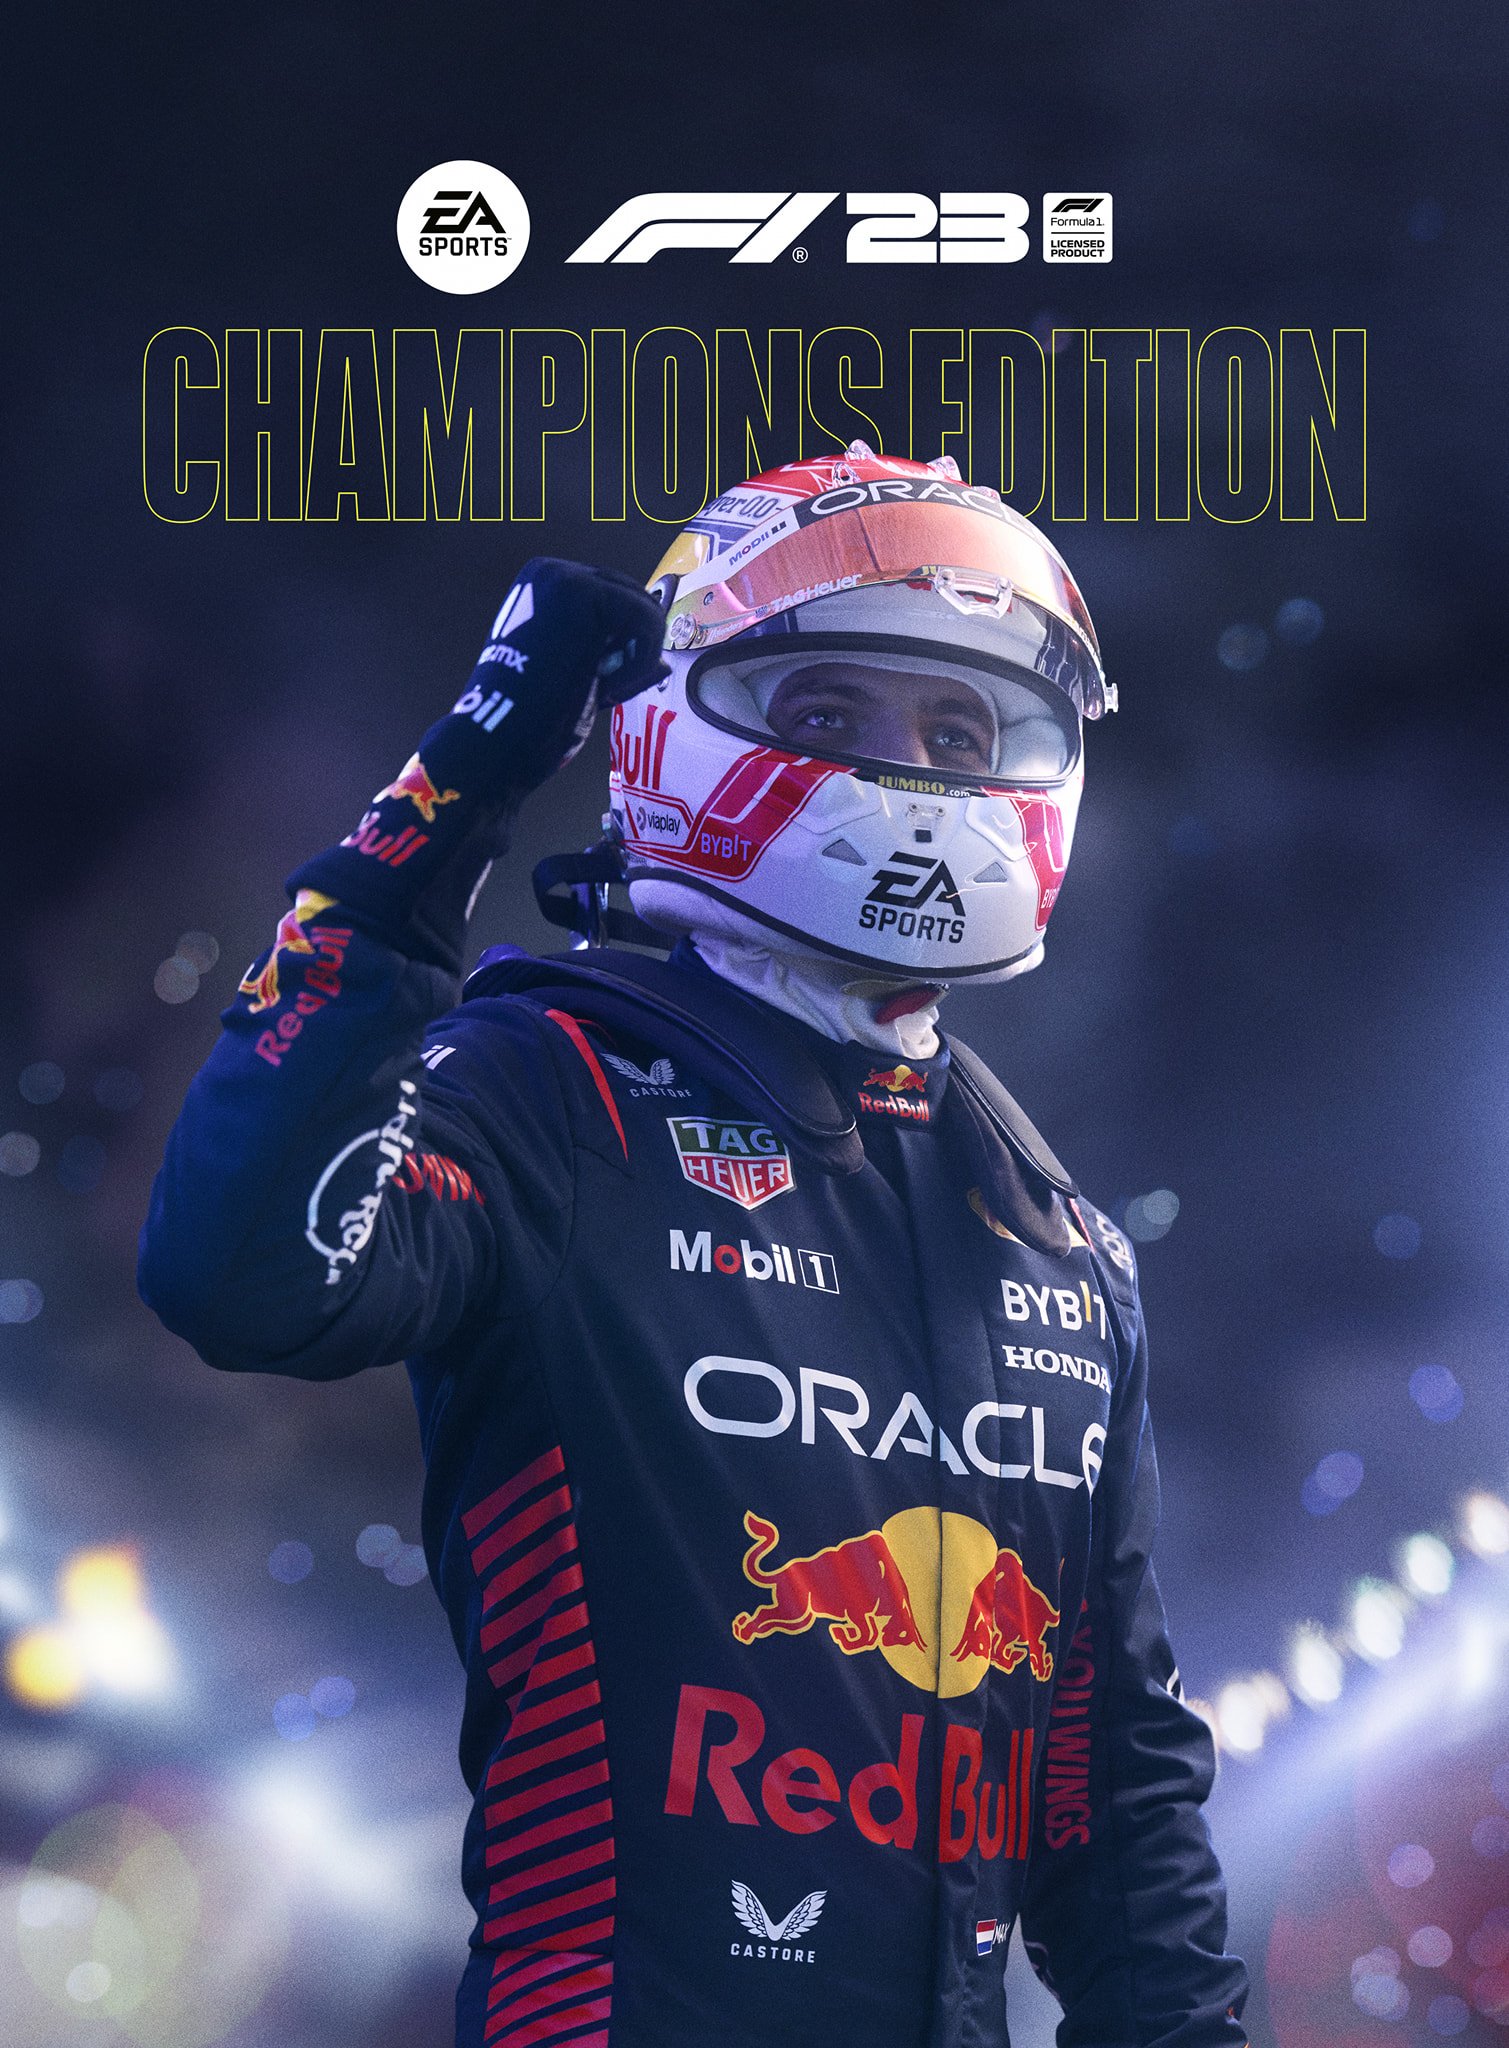 More information about "F1 23 EA Sports: copertina Champions Edition e trailer in arrivo"